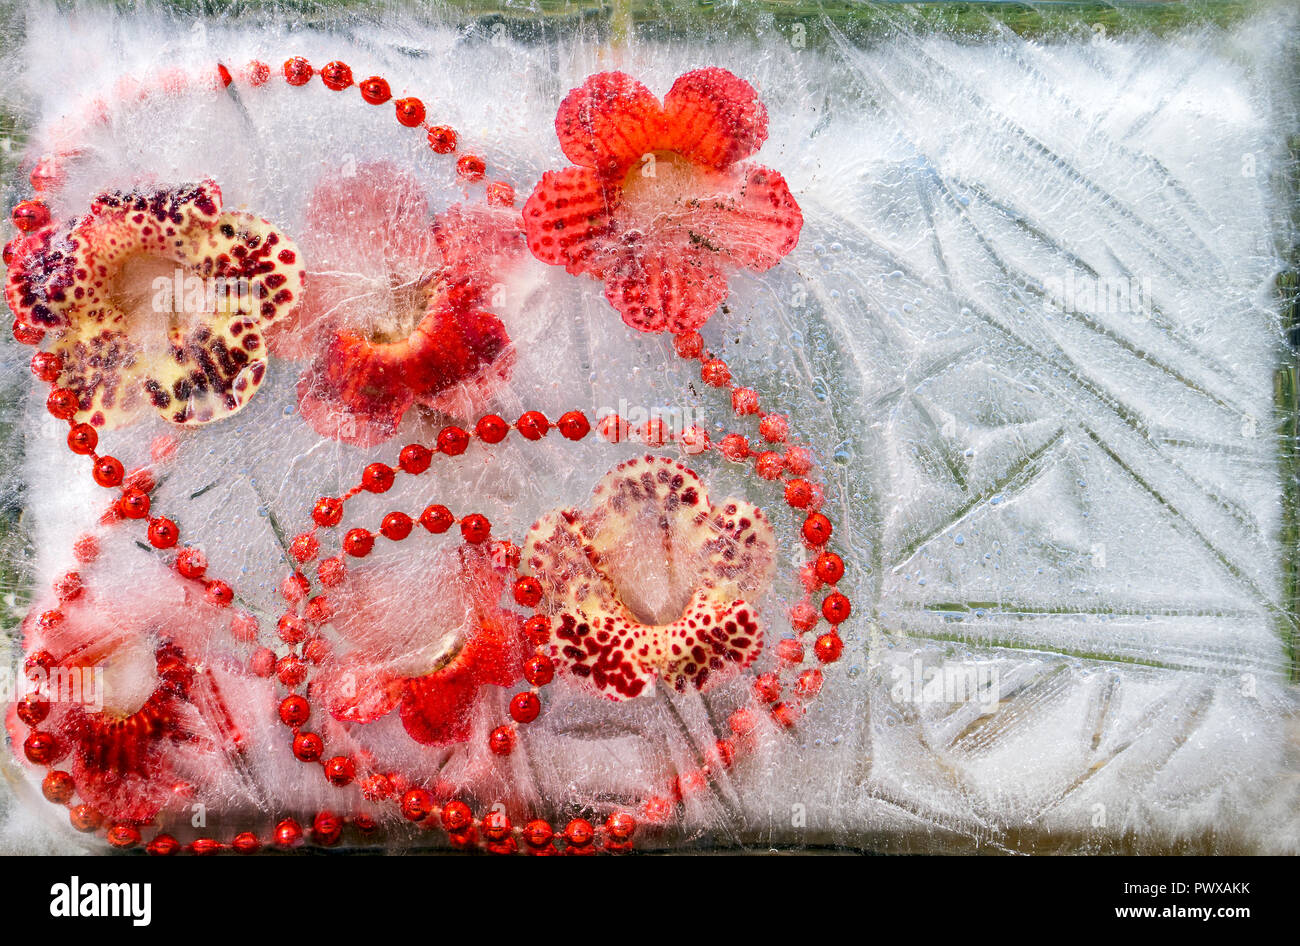 Contexte de bof fleur rouge en fleurs et perles en cube de glace avec des bulles d'air.Bonne année 2018 carte de vœux ou carte de Saint-Valentin. S COPIE Banque D'Images